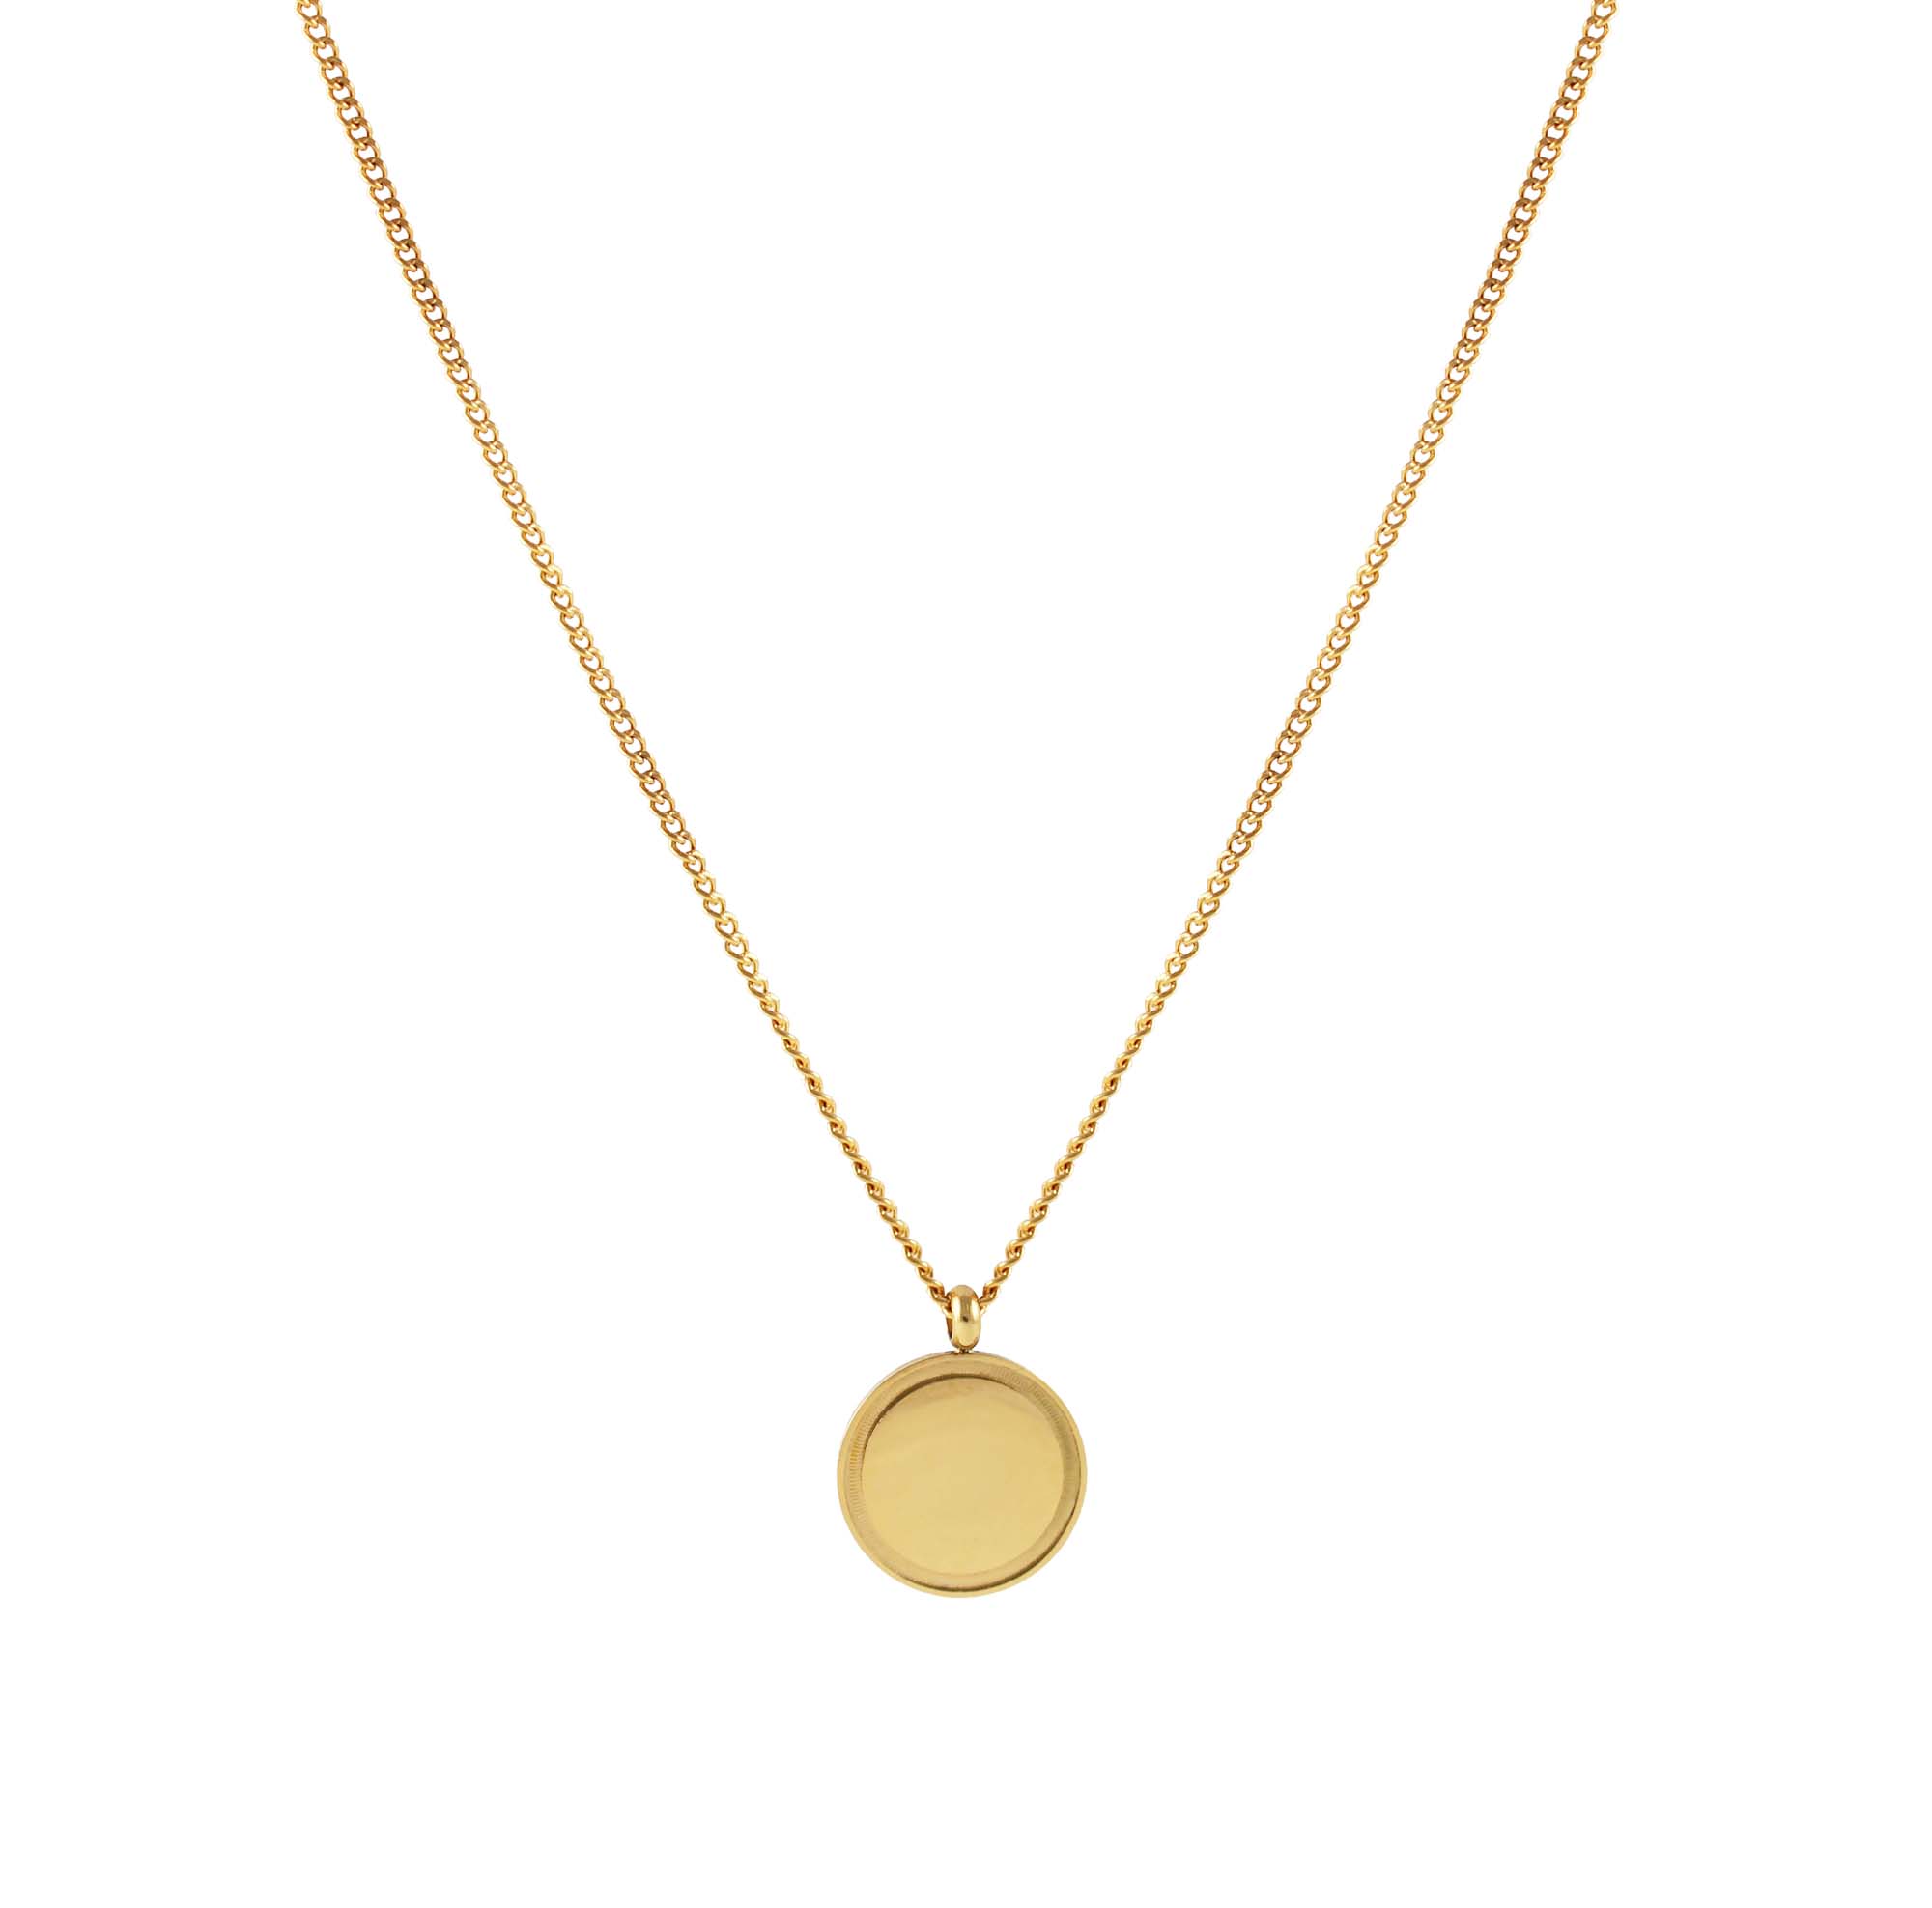 FJ Watches elbe necklace cuban link chain 18k gold men 2mm 45cm 55cm pendant round minimalist